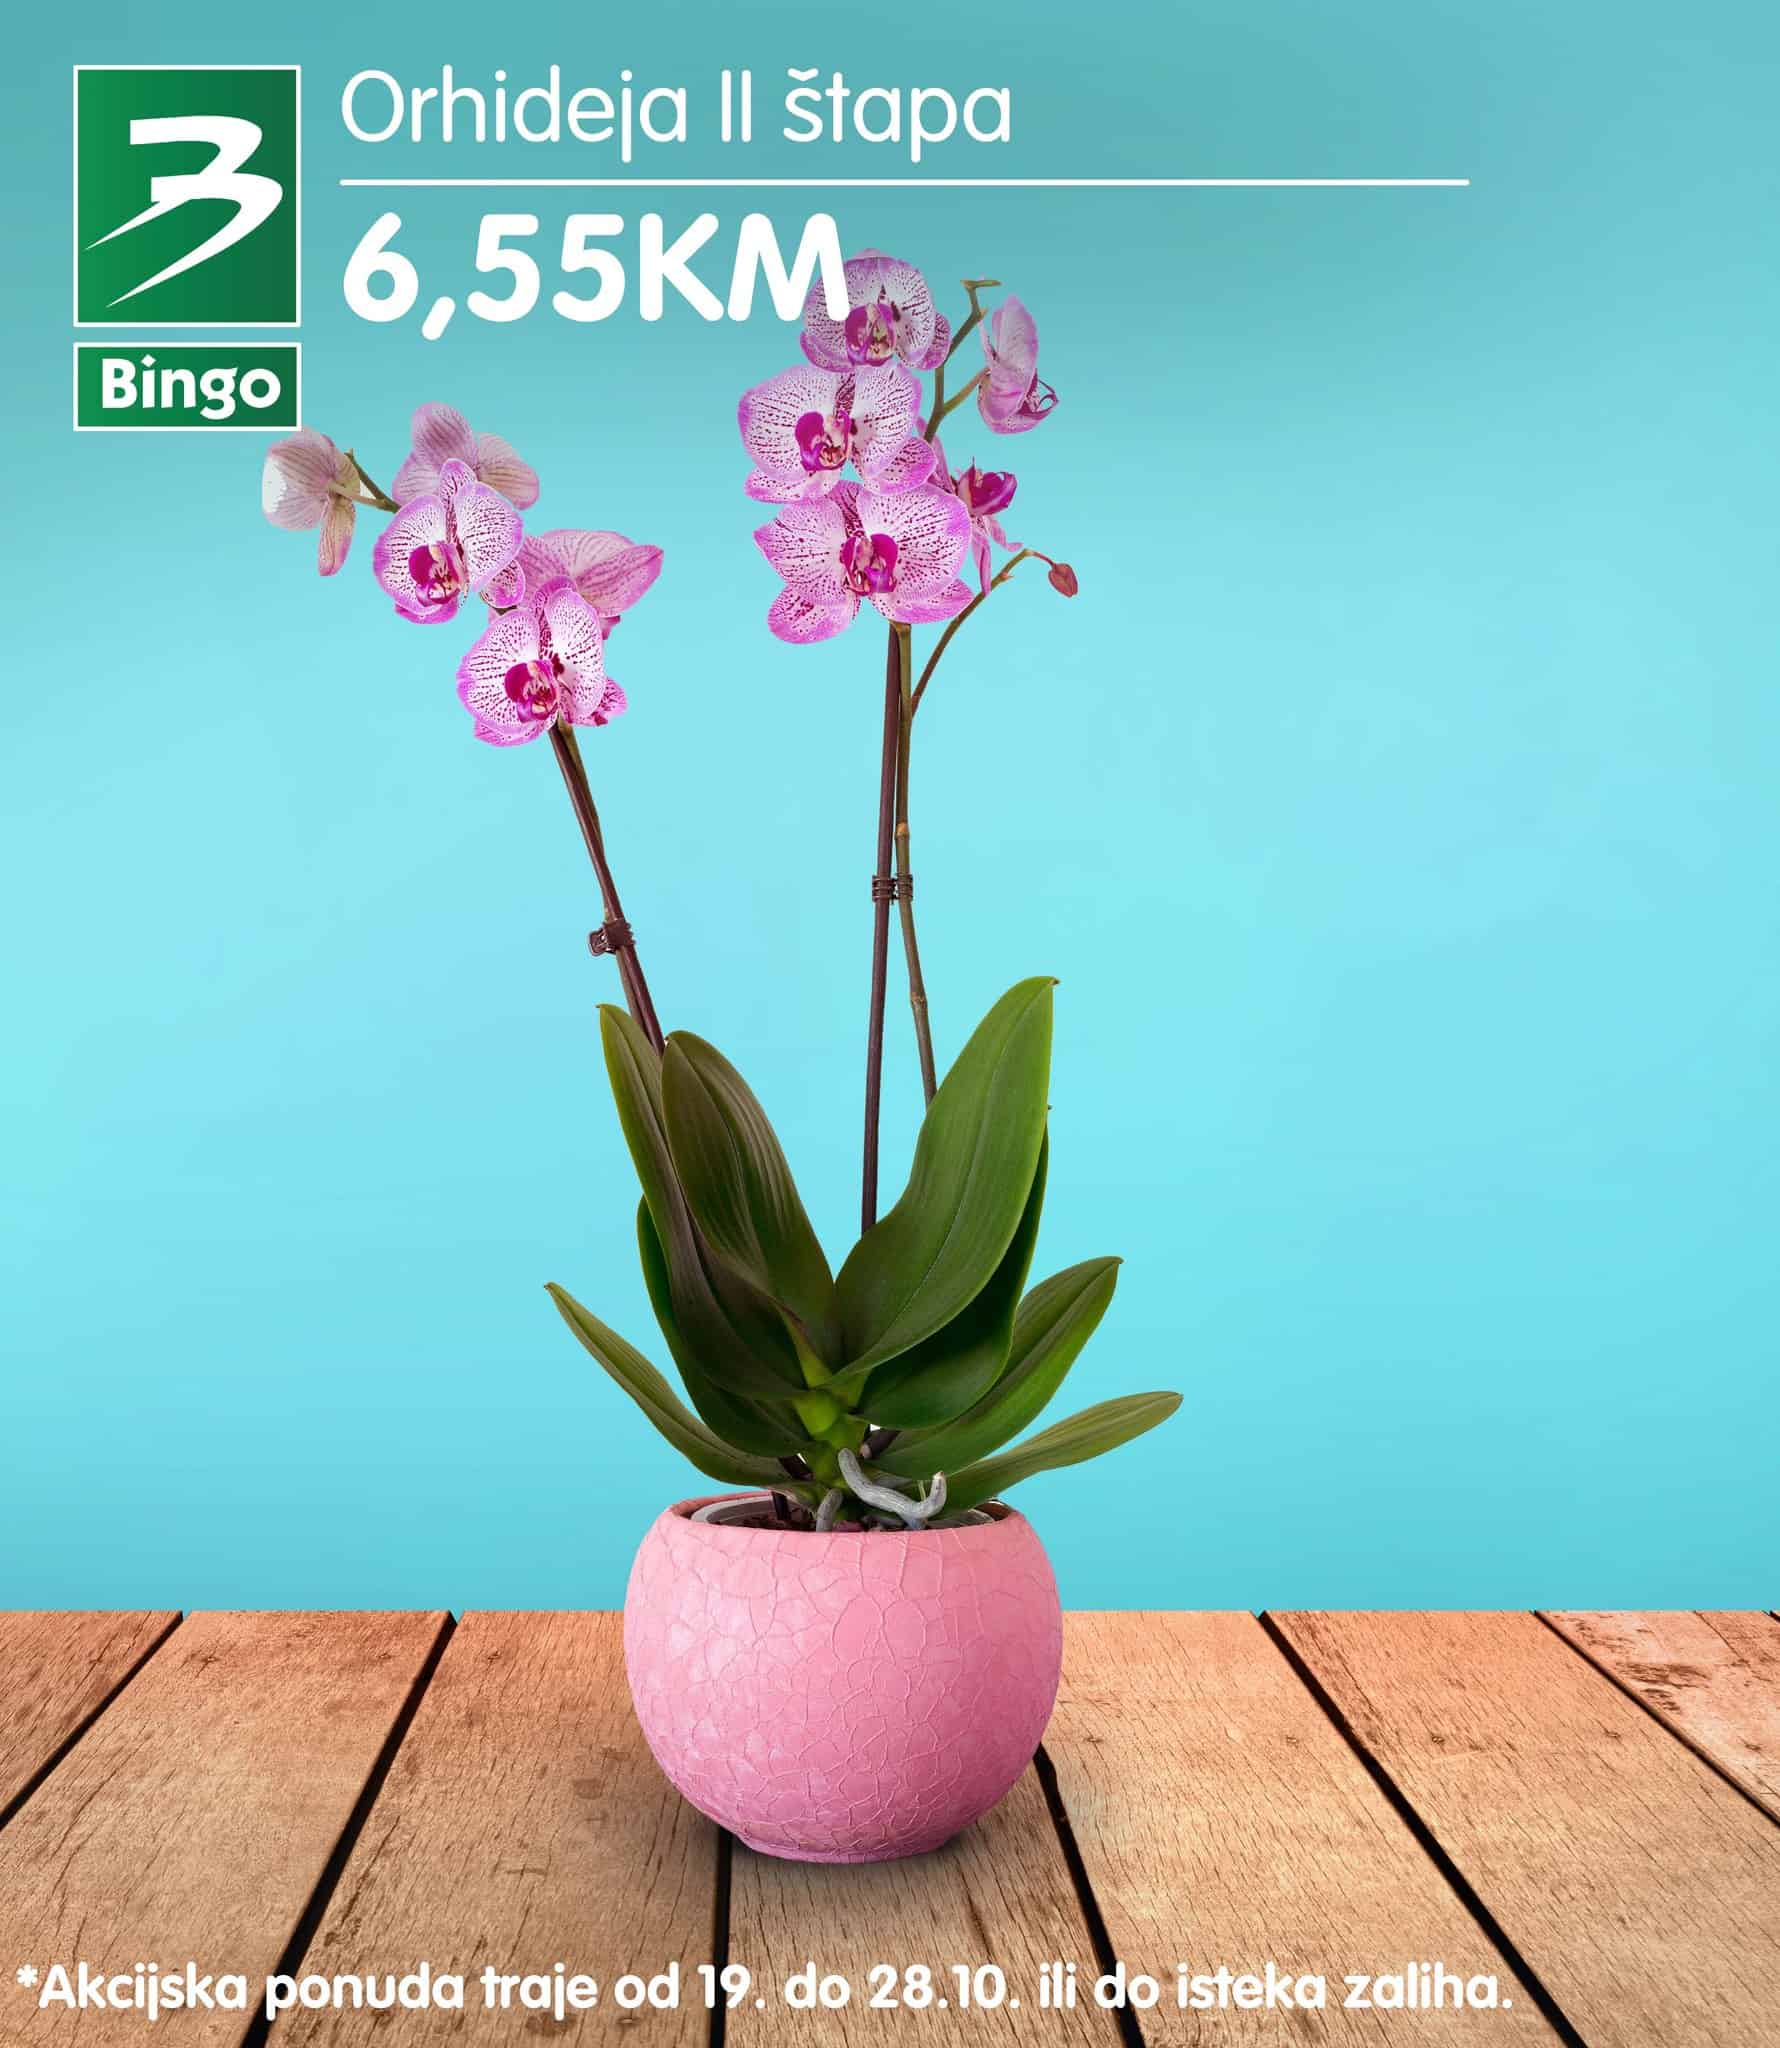 Bingo Orhideja II štapa akcijska cijena samo 6,55 KM